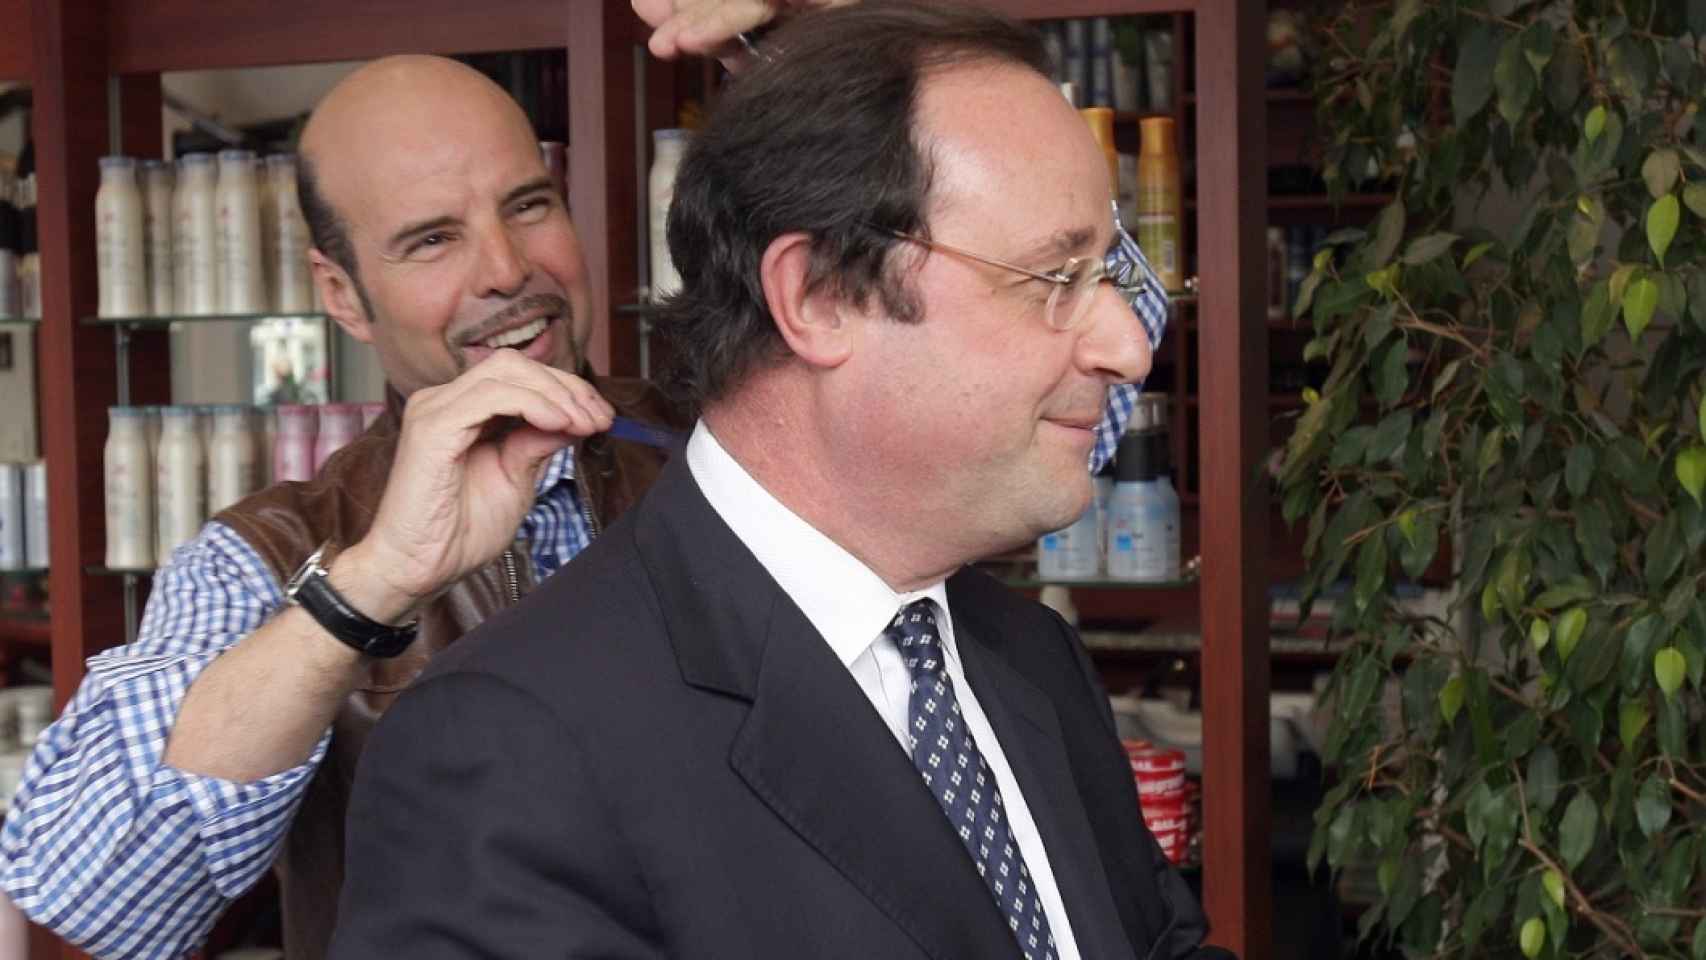 Imagen sin referencia aparecida en la red del supuesto peluquero y su cliente, Hollande